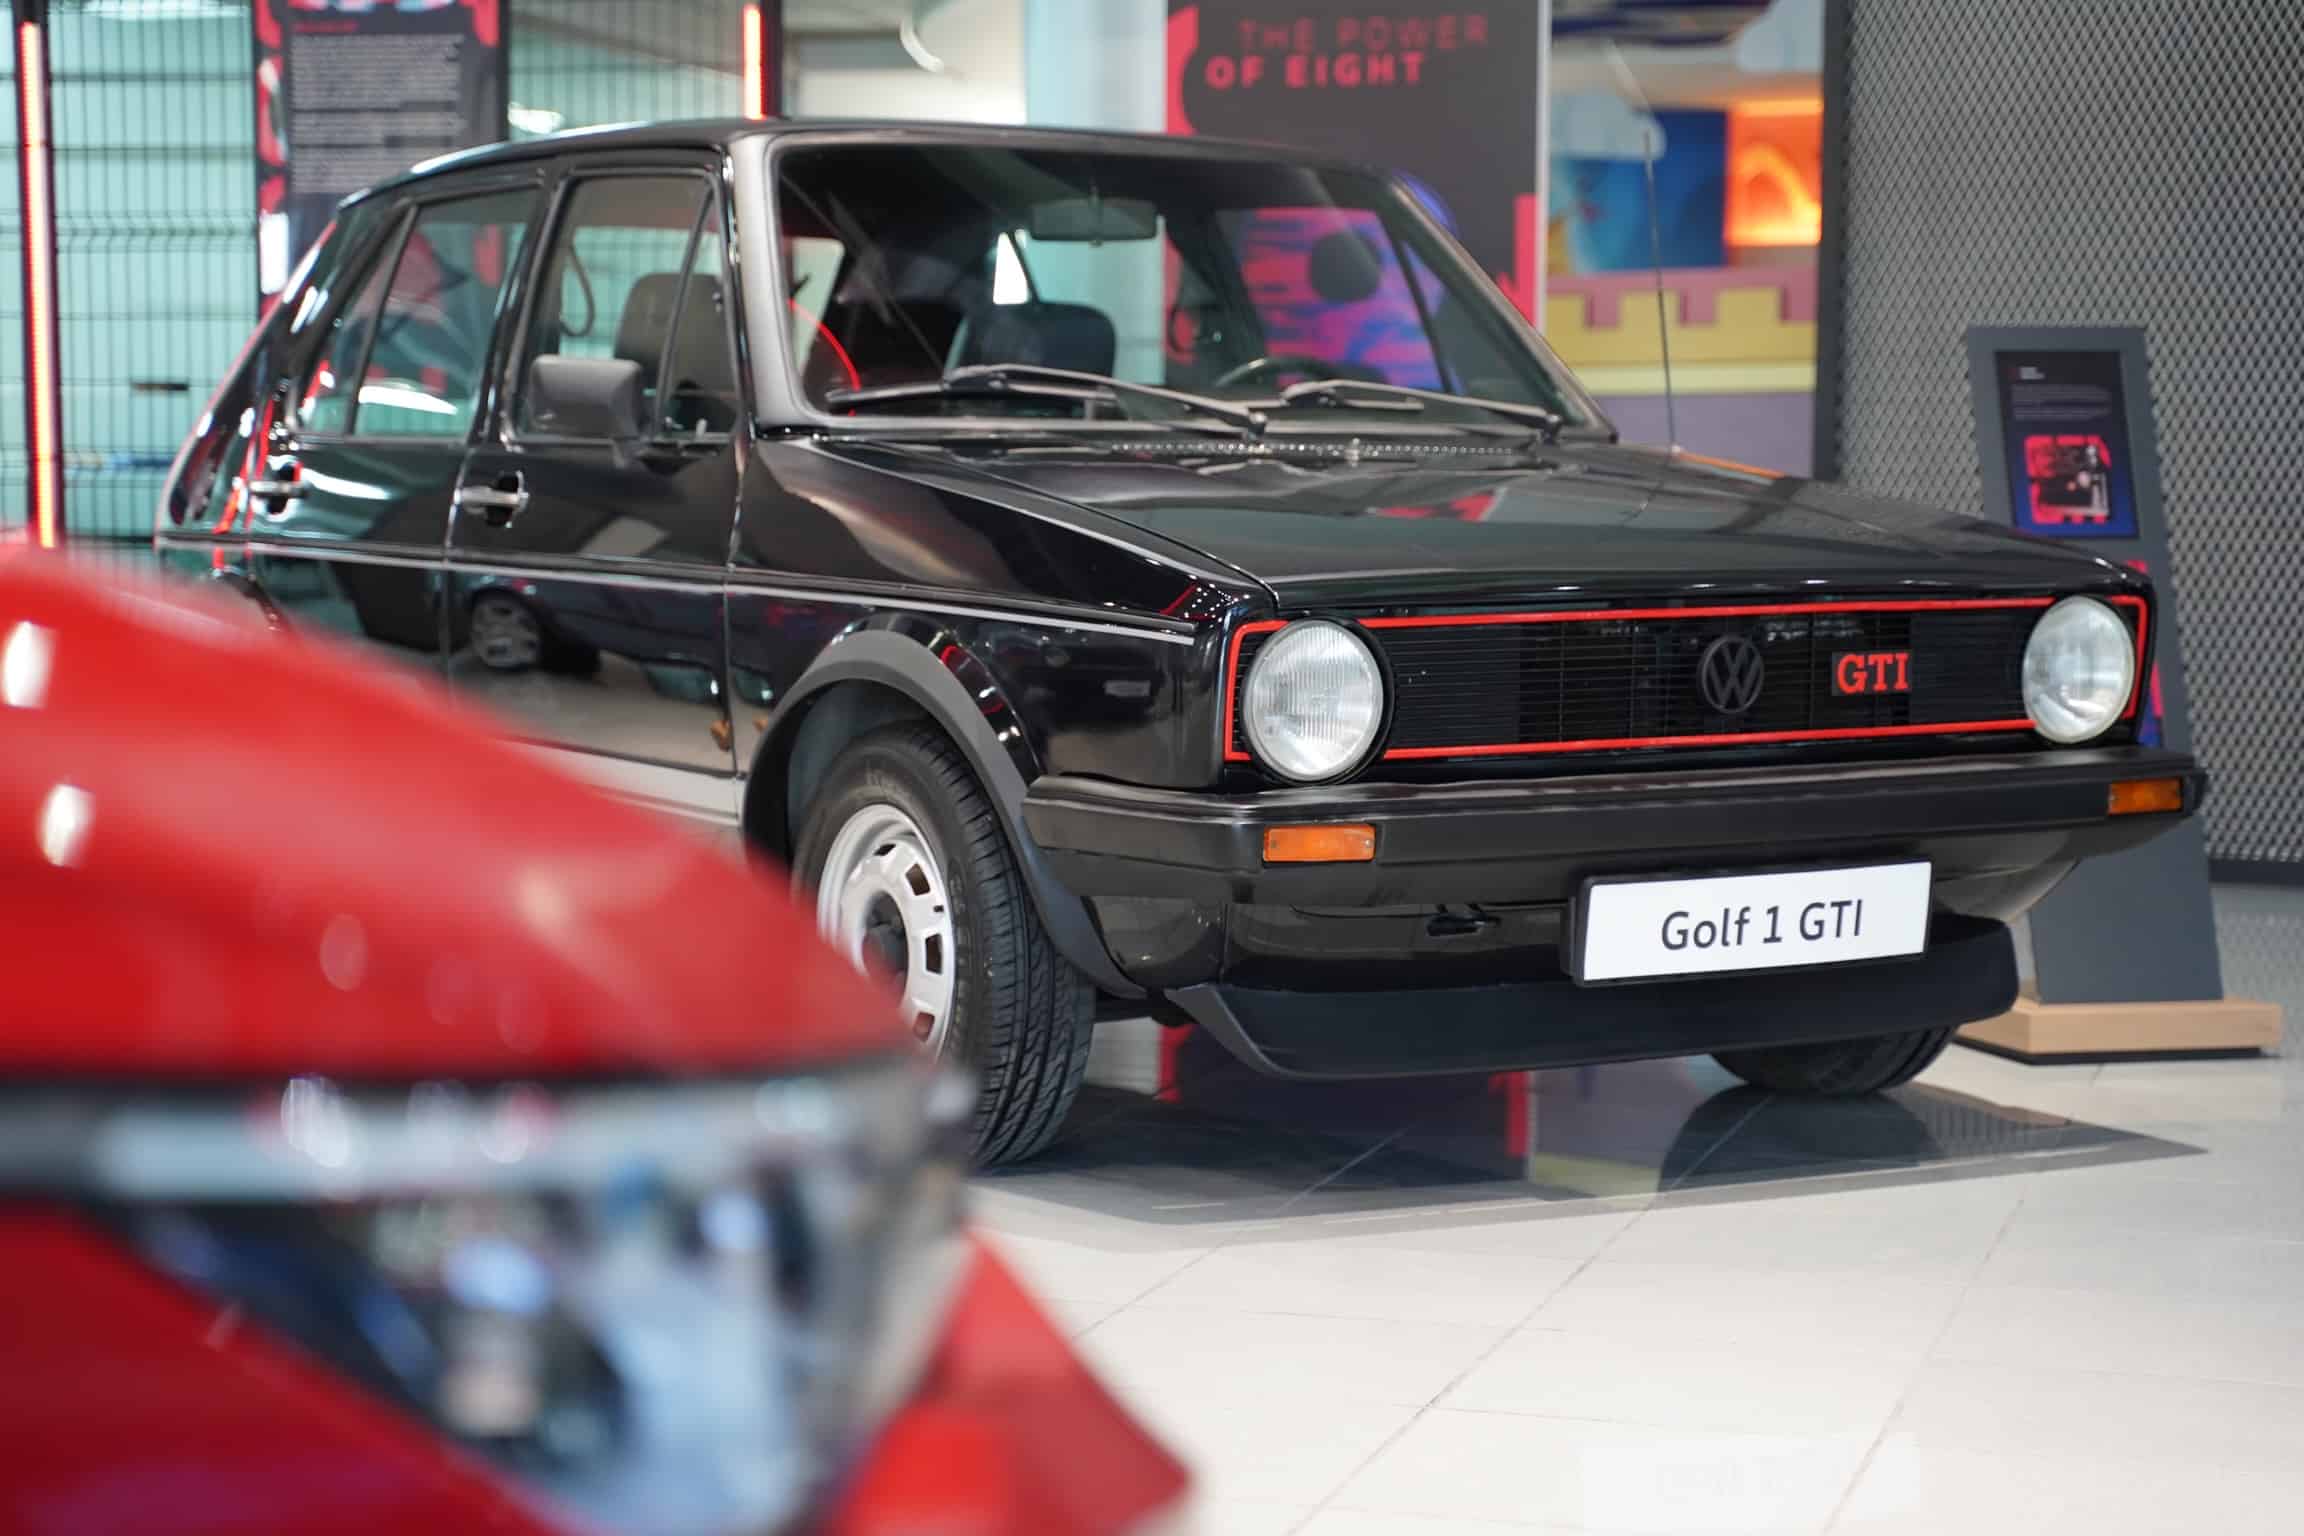 فولكس واجن تحتفل بمرور 45 عاماً على إطلاق سيارة جولف GTI من خلال معرض خاص لمراحل تطور السيارة الرائدة